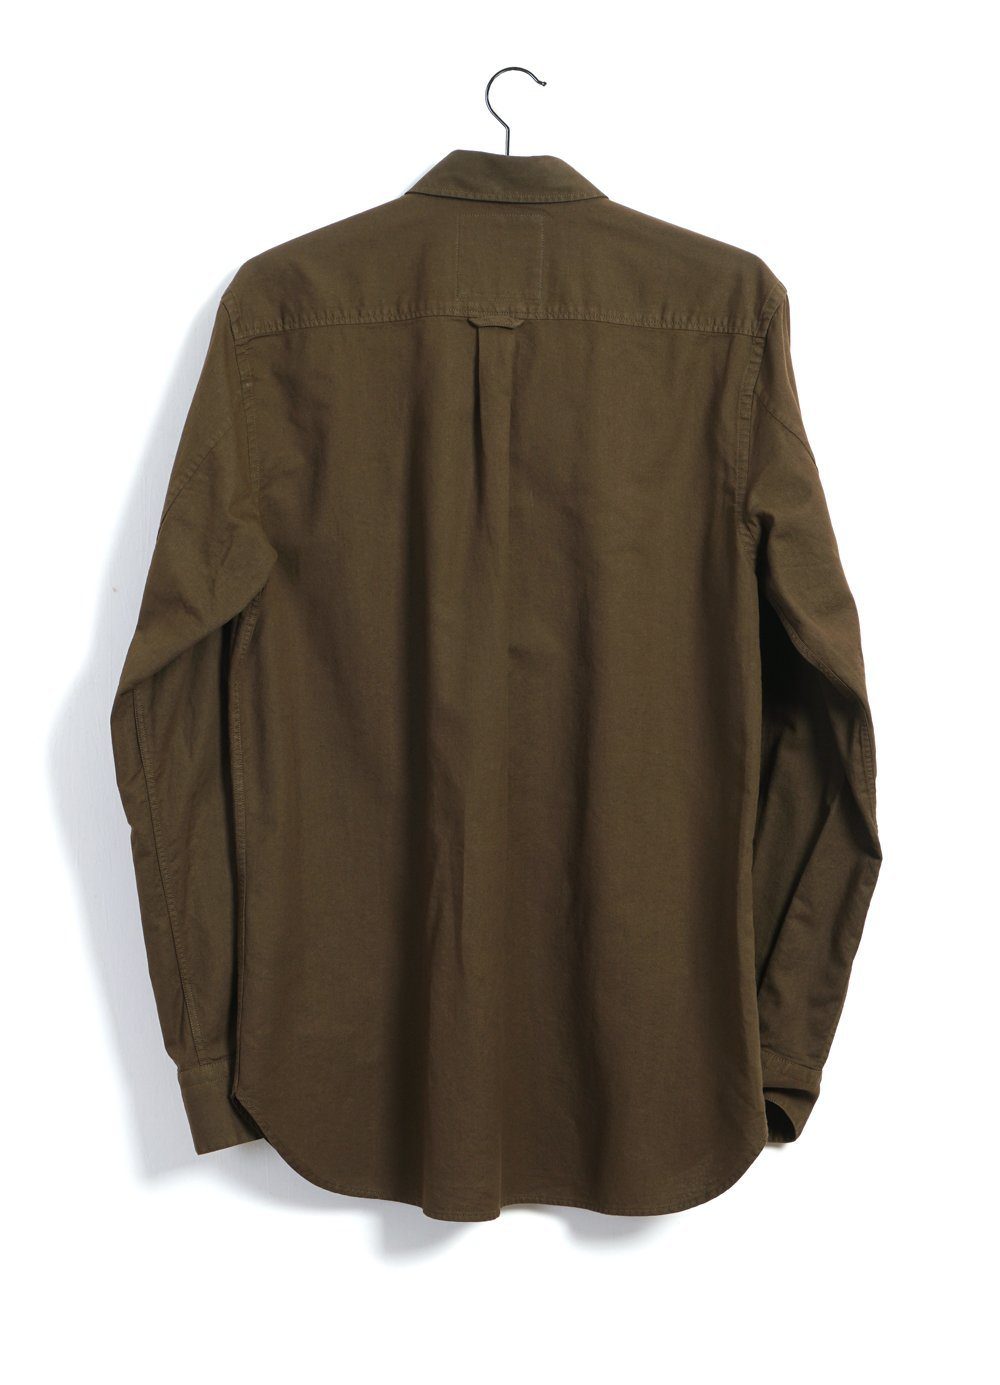 HANSEN Garments - HAAKON | Hidden Button Down Shirt | Plant - HANSEN Garments